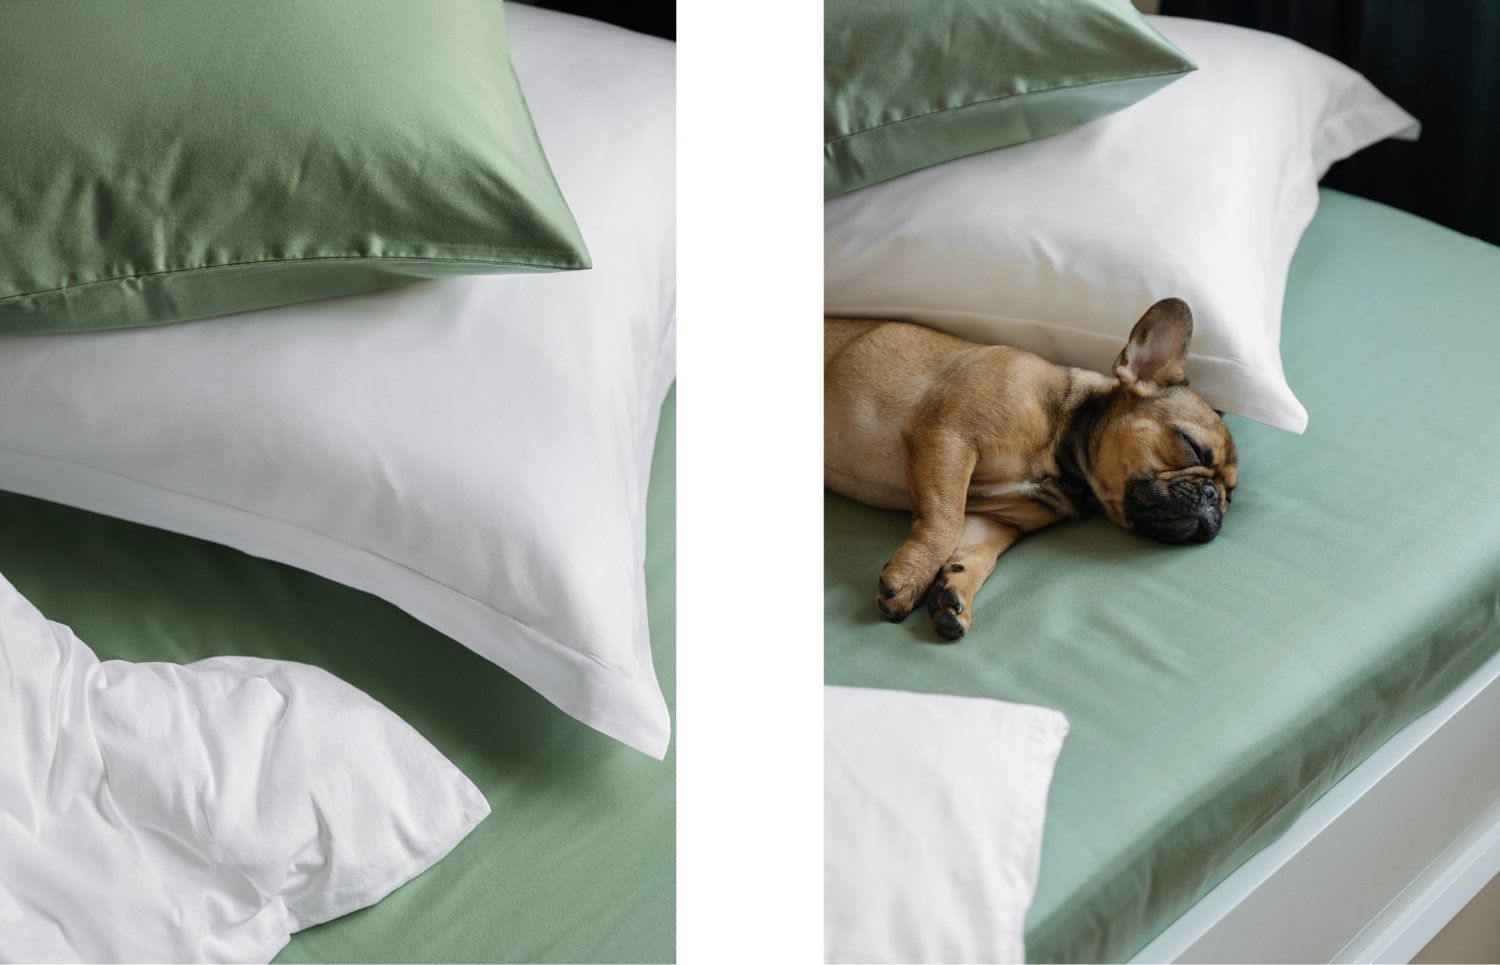 Vďaka útulnej posteli budete o krok bližšie ku kvalitnému spánku. Miška tú svoju dotvorila zelenou kolekciou Jane's Weekend.